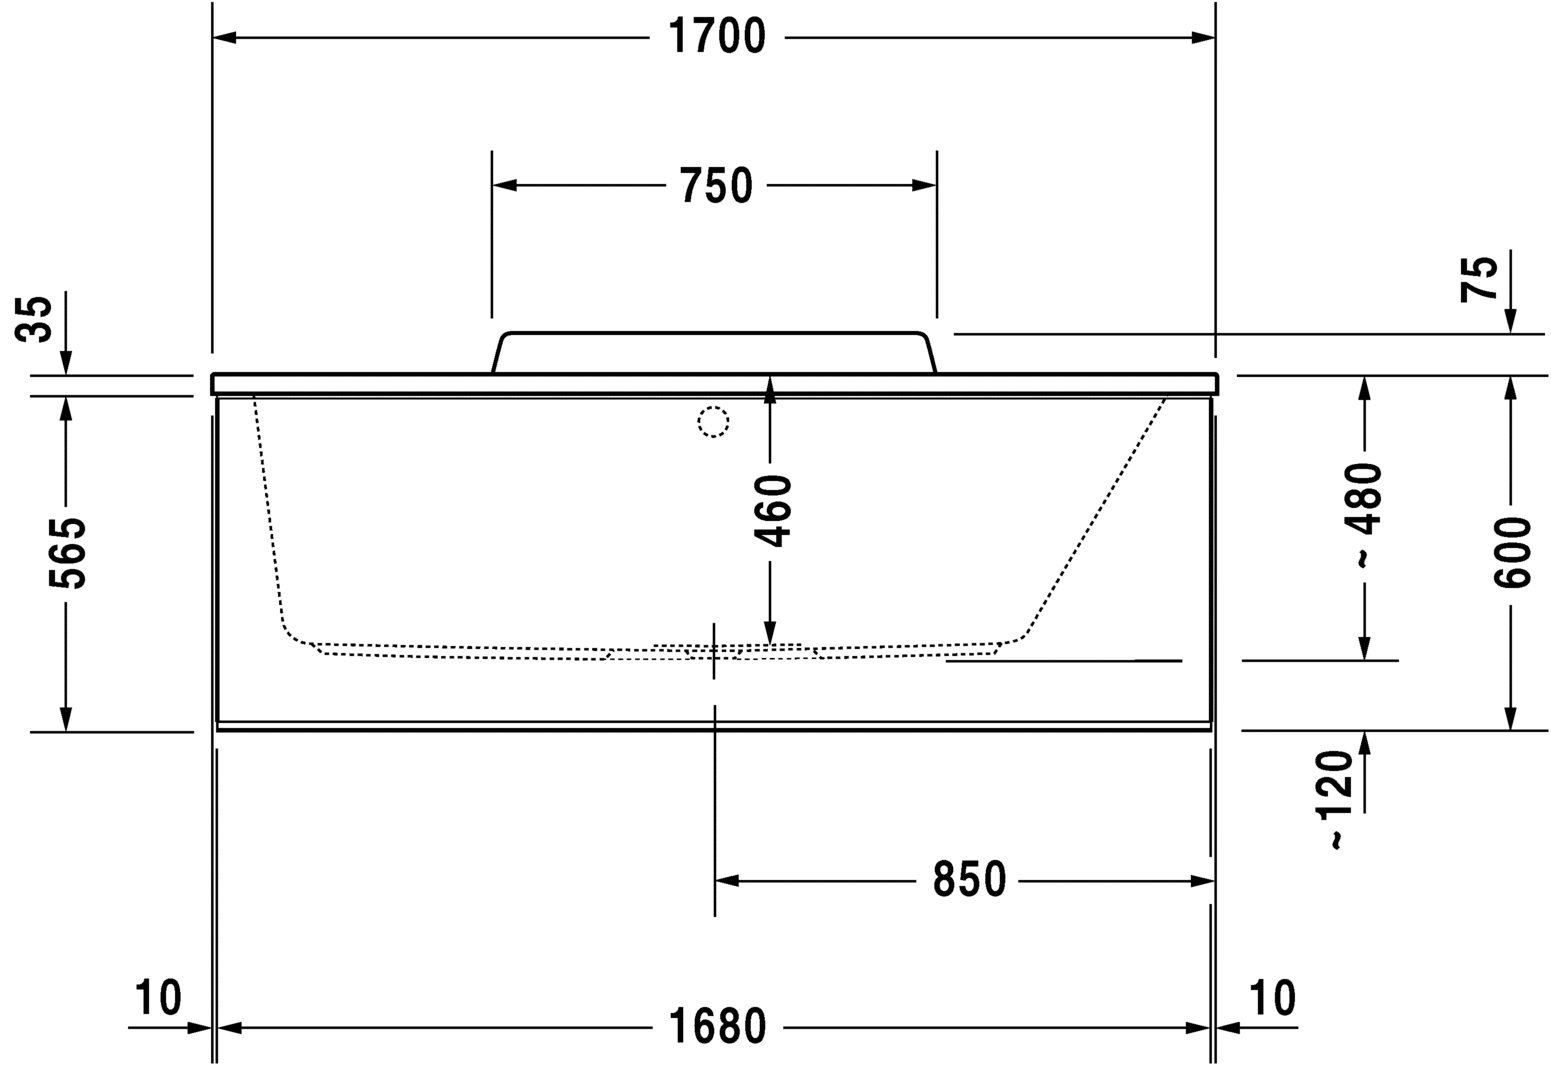 Акриловая ванна Duravit DuraStyle 700295000000000 1700 х 700 c наклоном для спины справа, встраиваемая или с панелями, белая